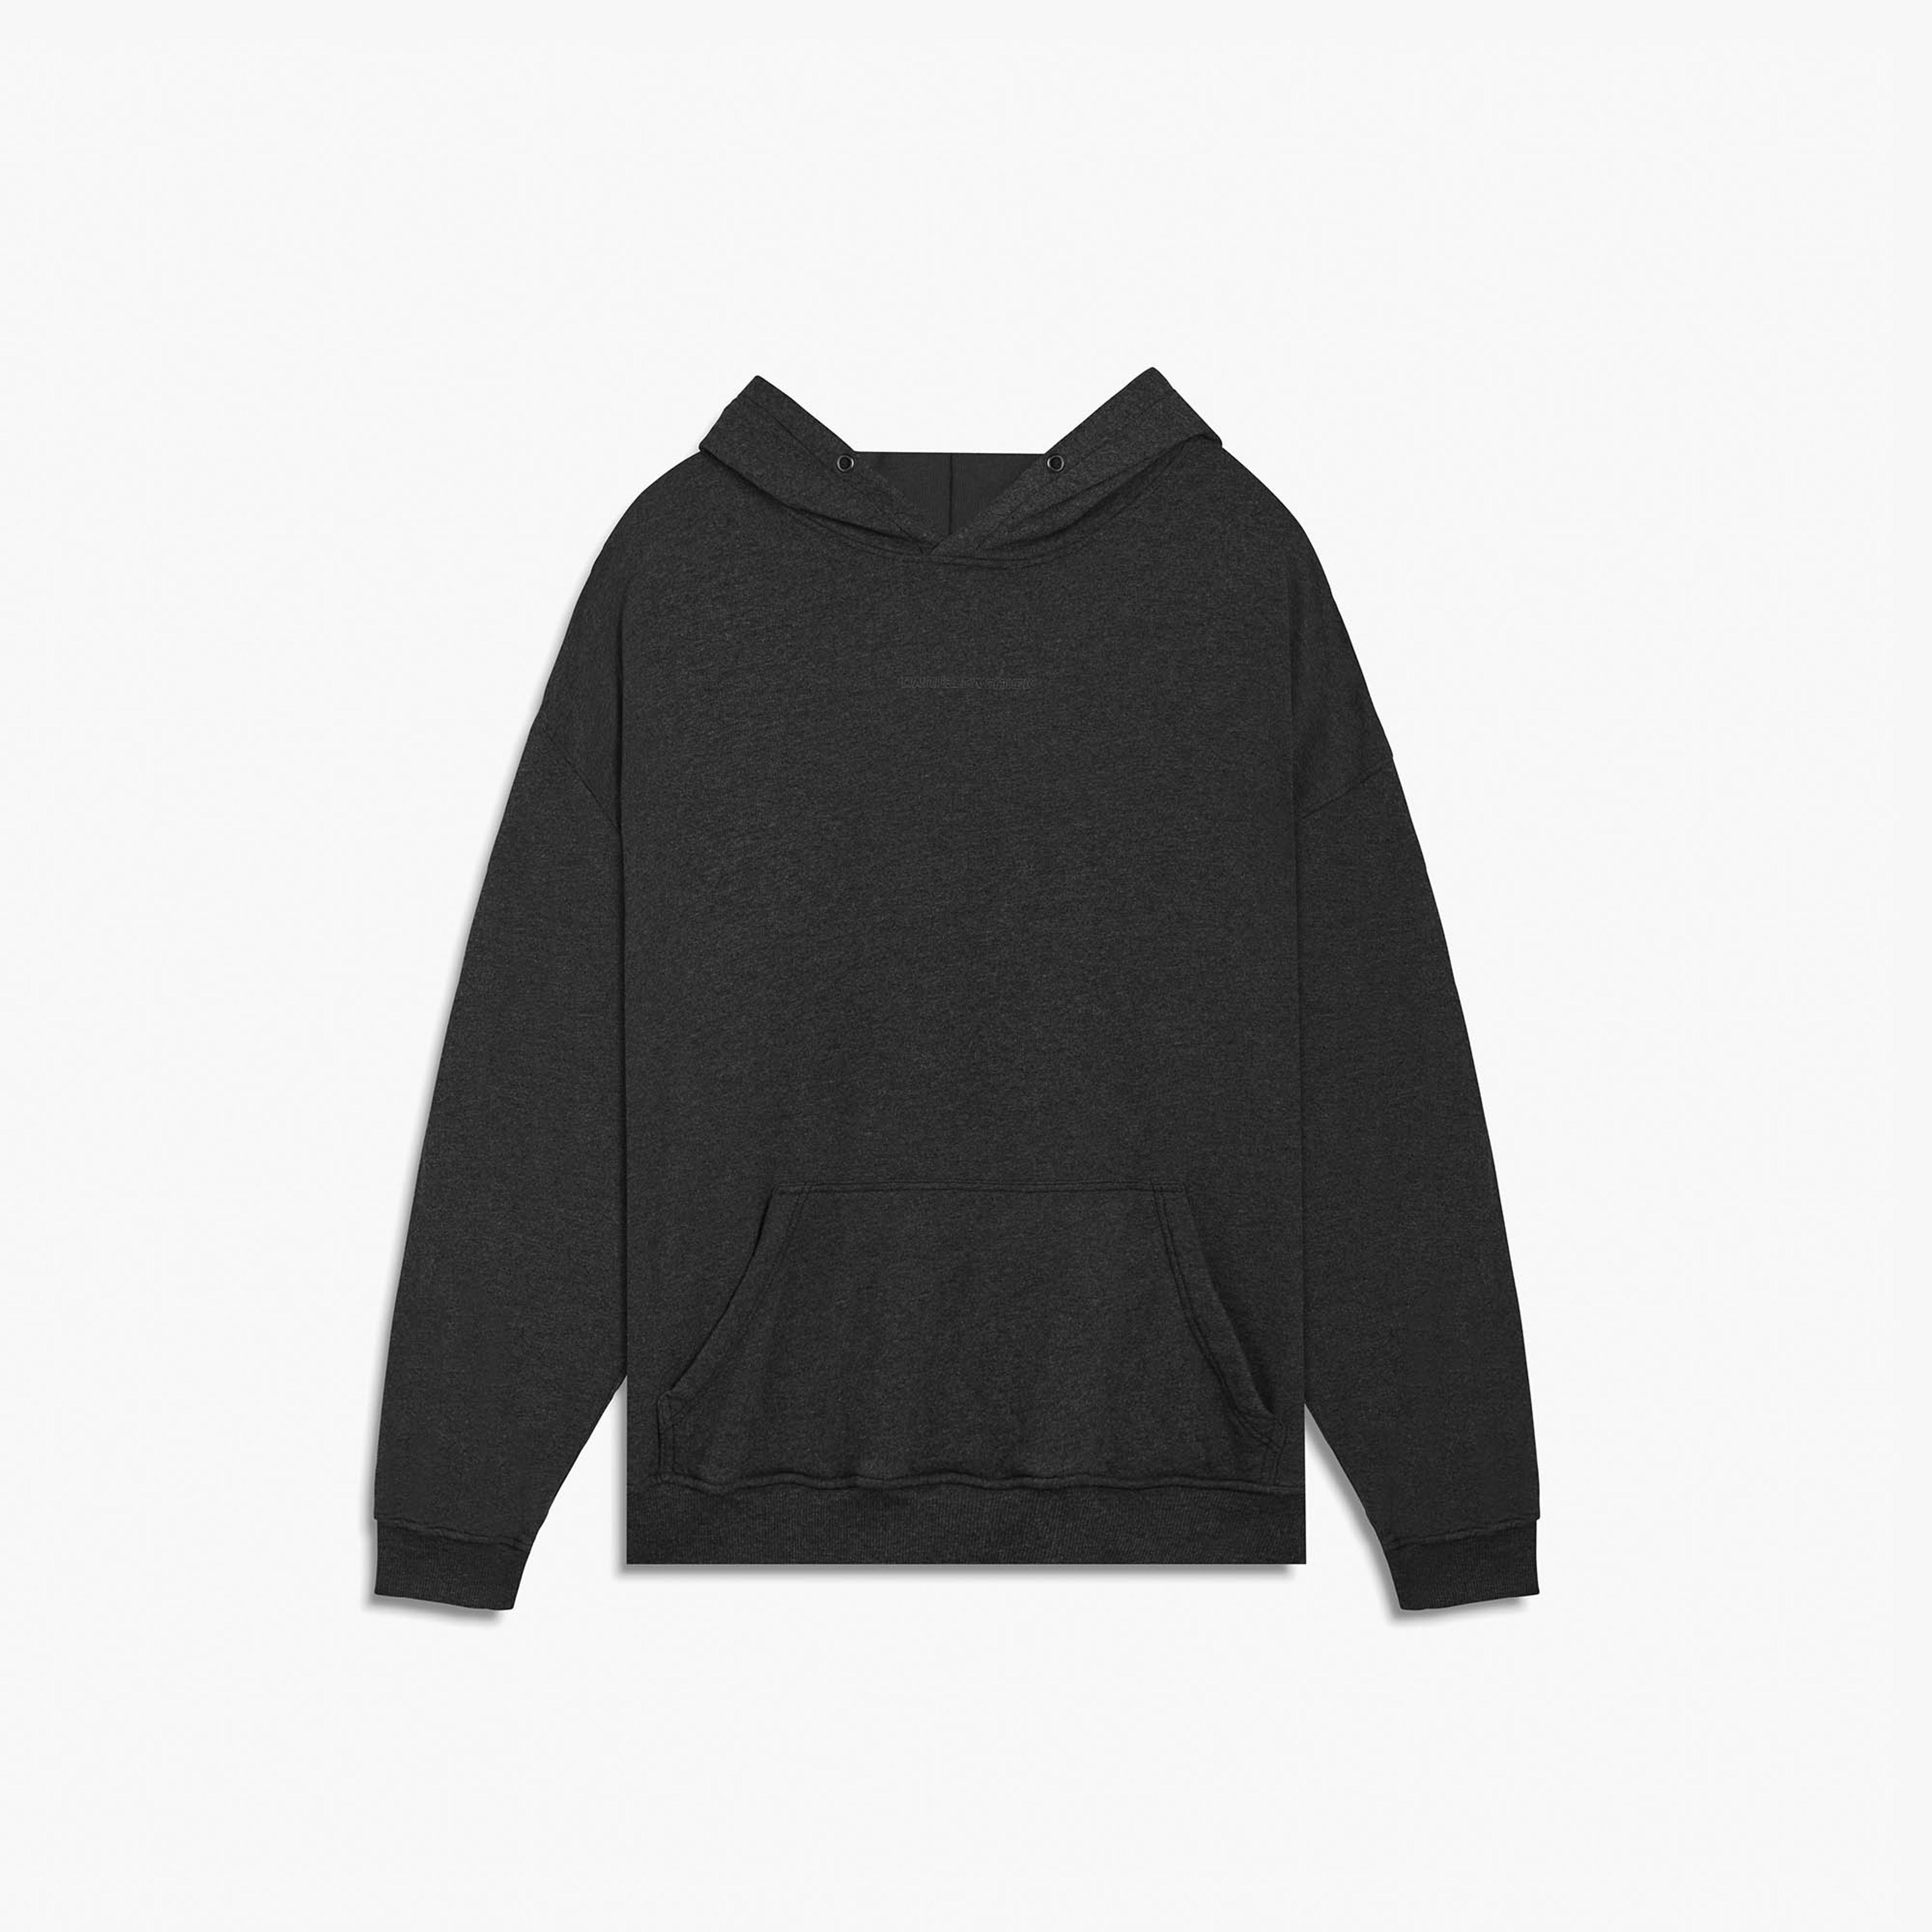 loop terry standard hoodie / black heather